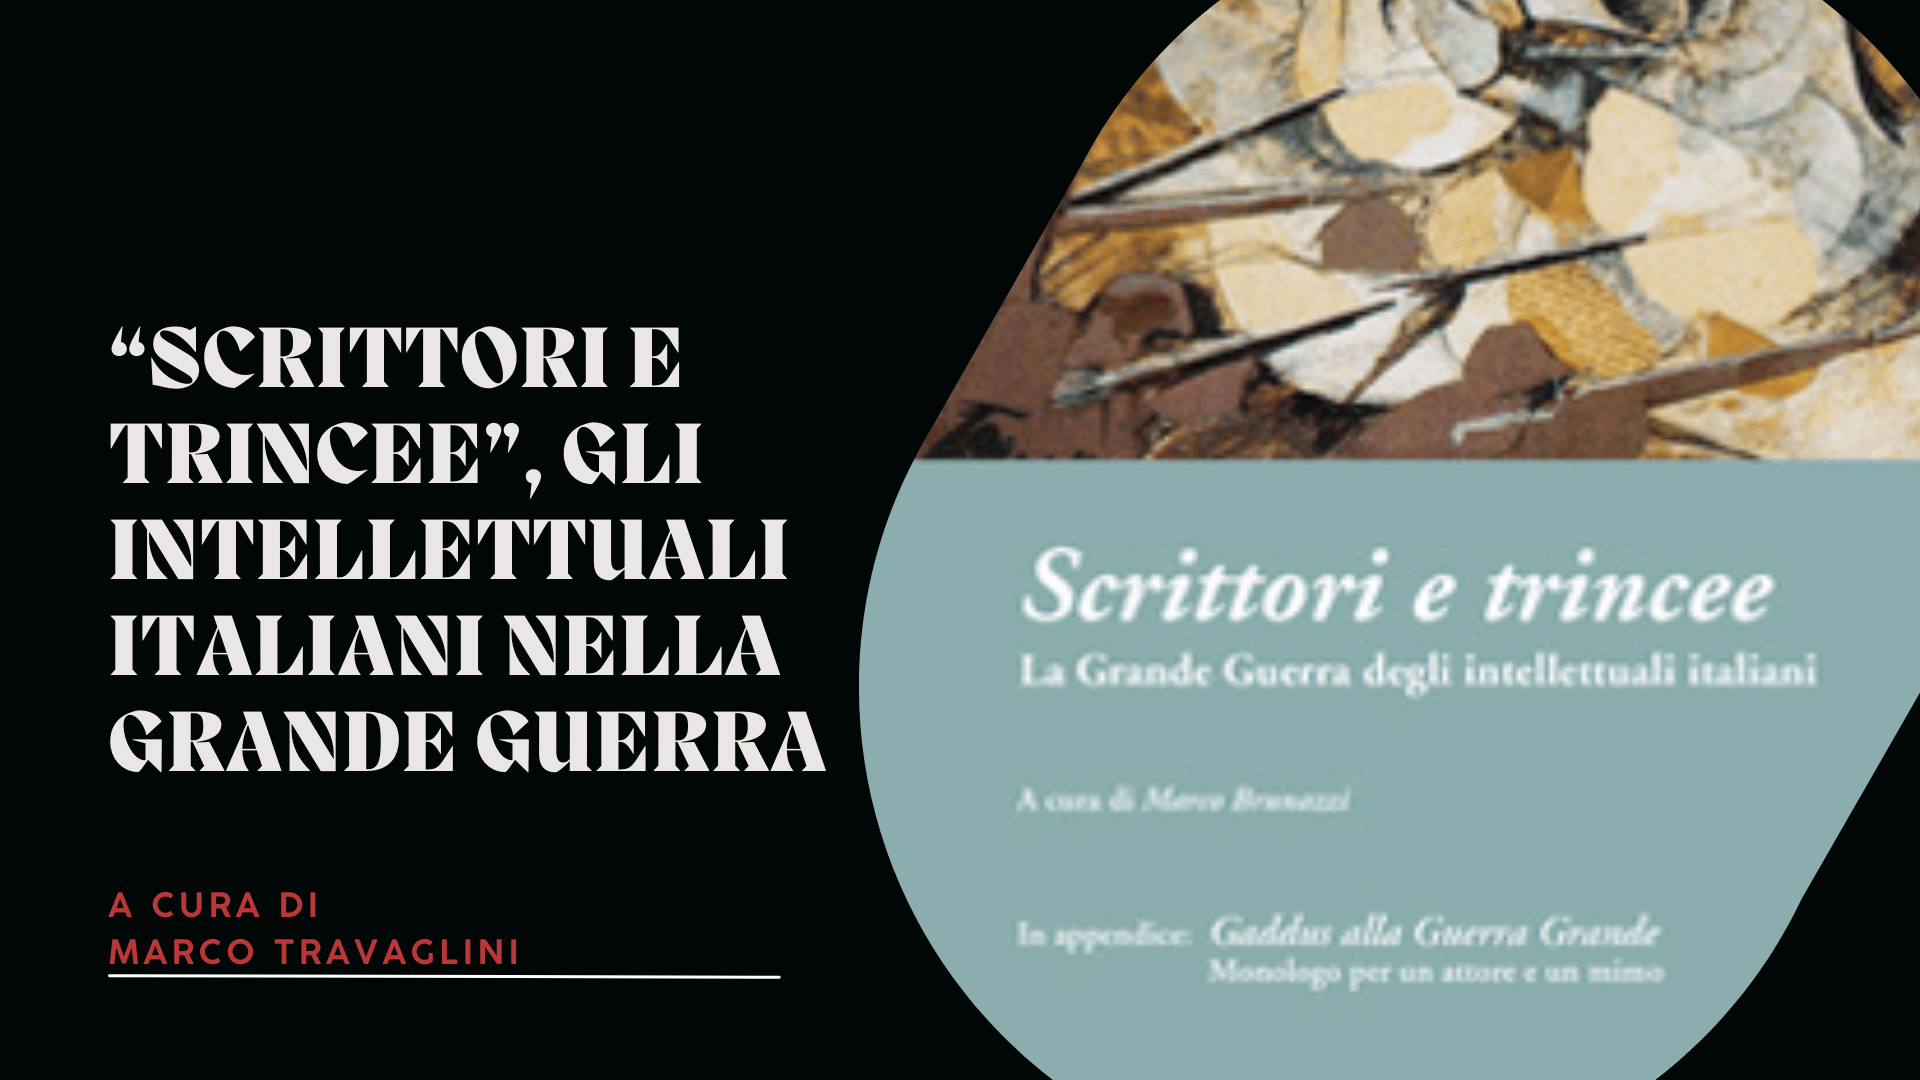 “Scrittori e trincee”, gli intellettuali italiani nella Grande guerra